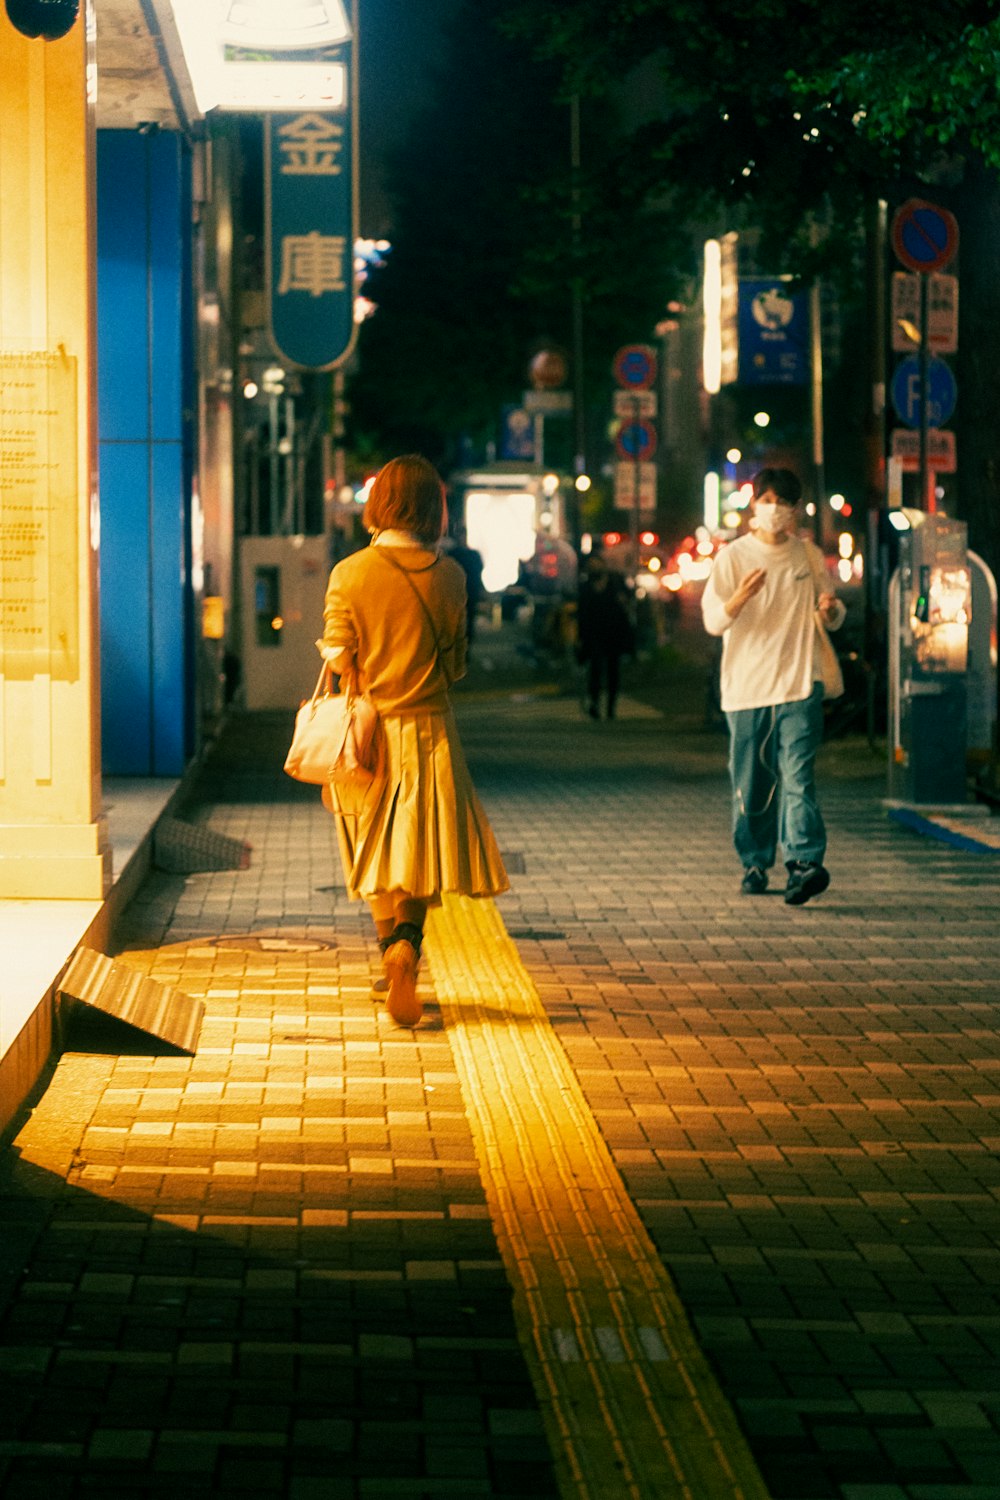 Une femme marchant dans une rue la nuit